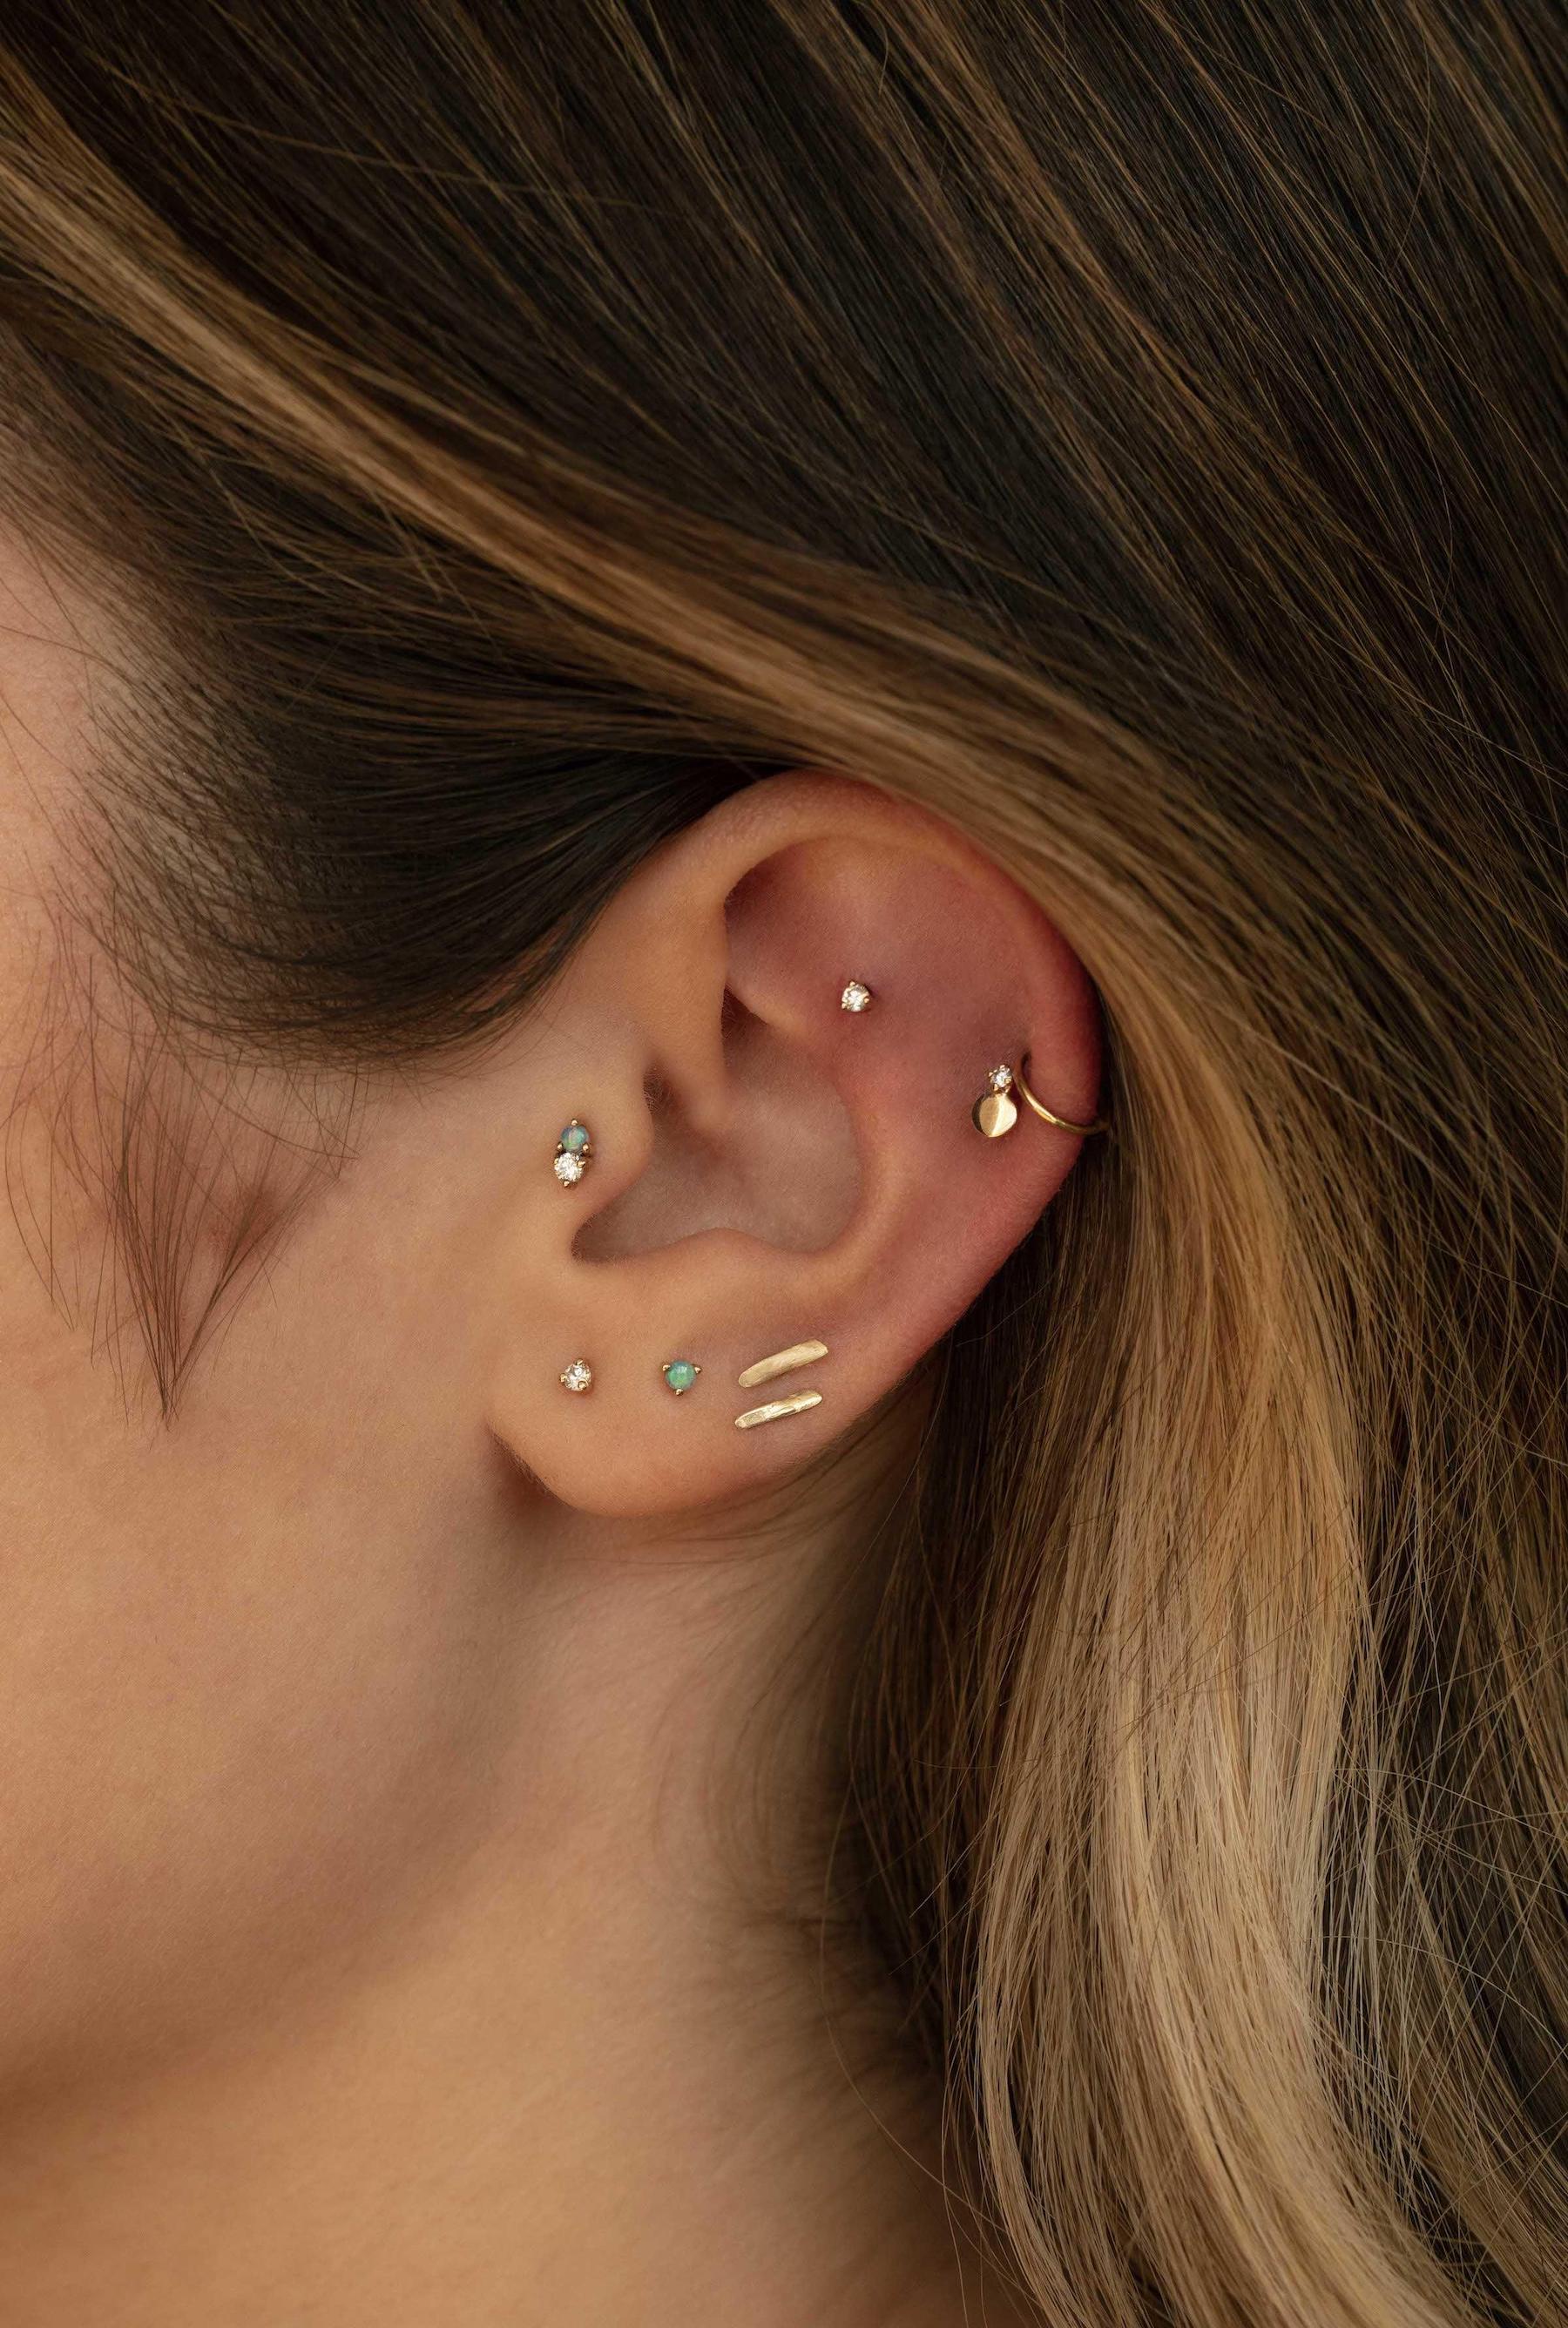 JORDAN Flat Back Piercing Stud Earring 14K – La Nadia Jewels